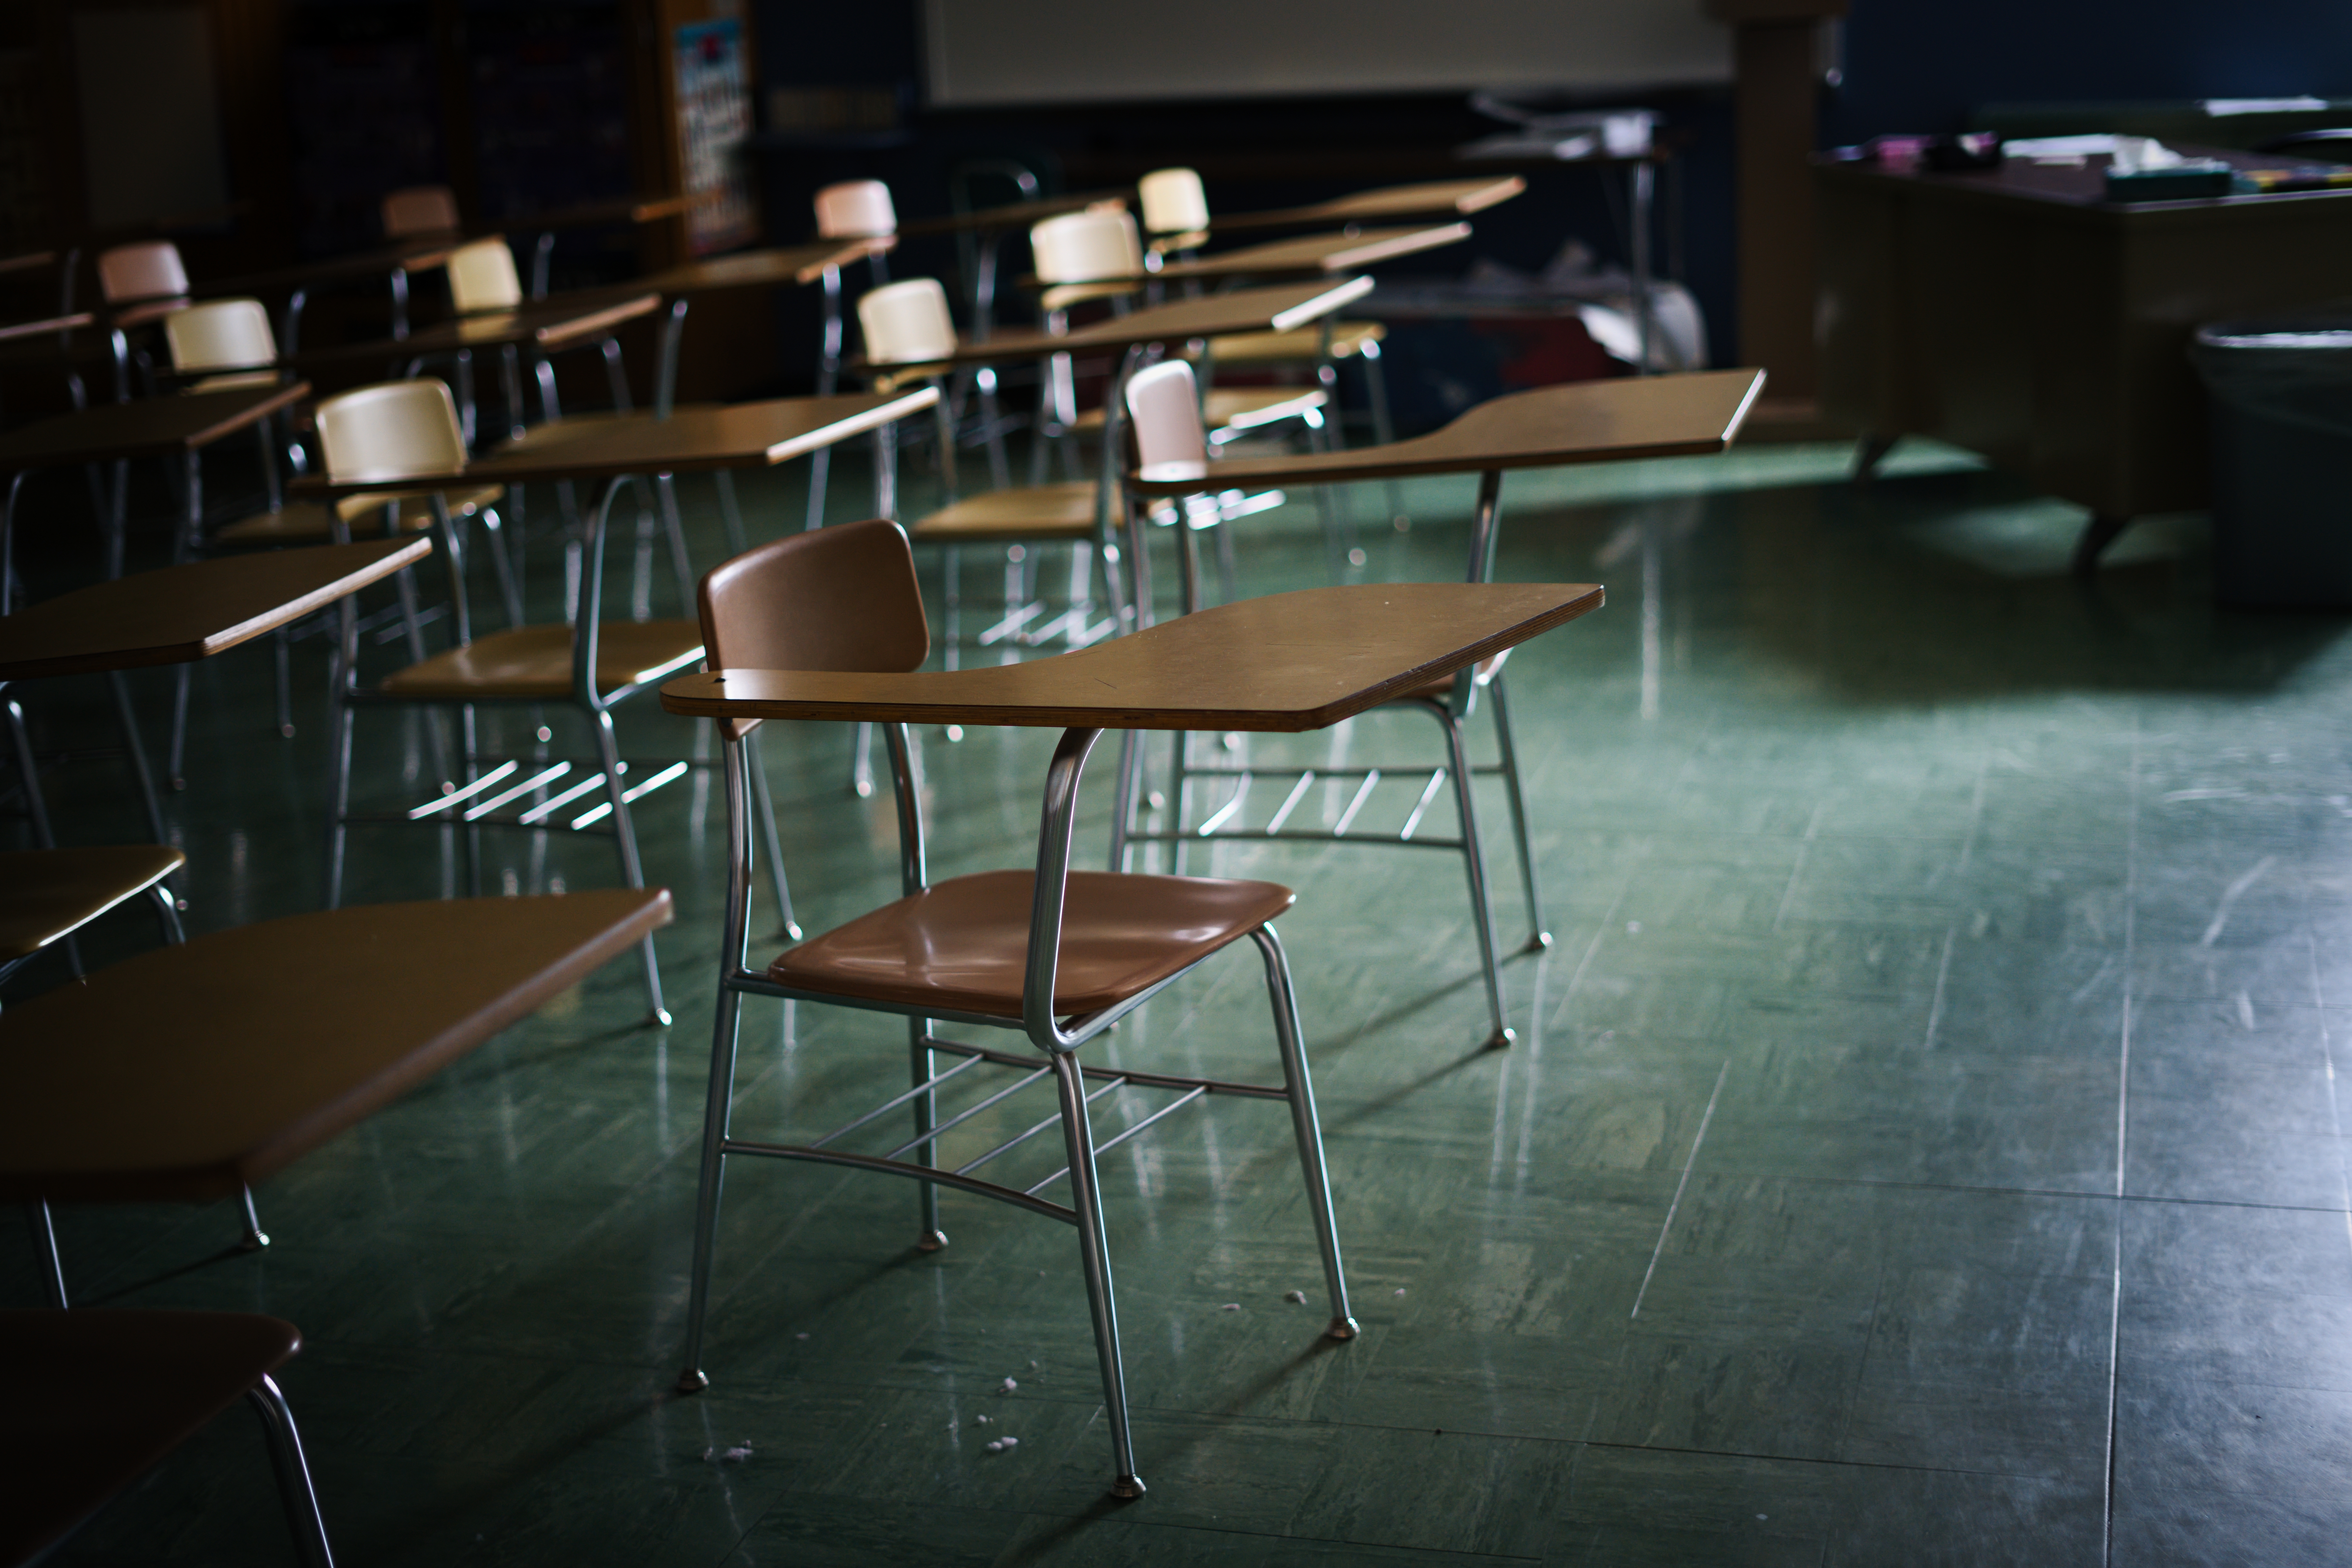 Ein dunkles, leeres Klassenzimmer | Quelle: Shutterstock